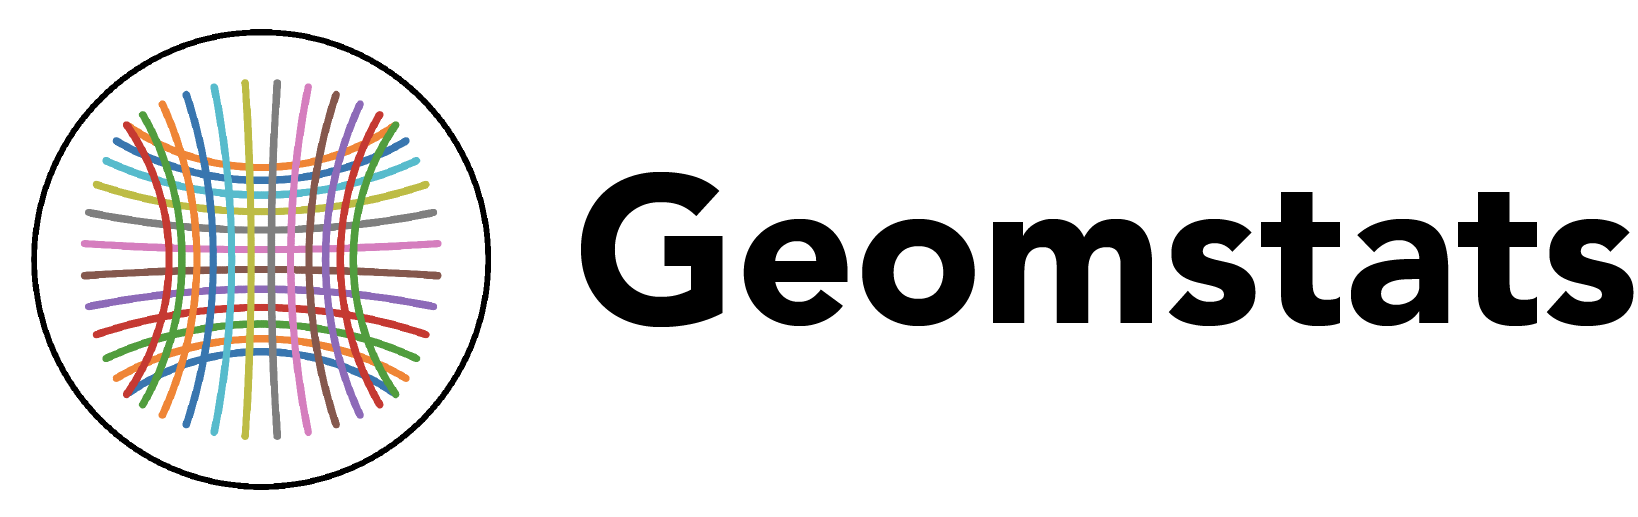 Geomstats logo